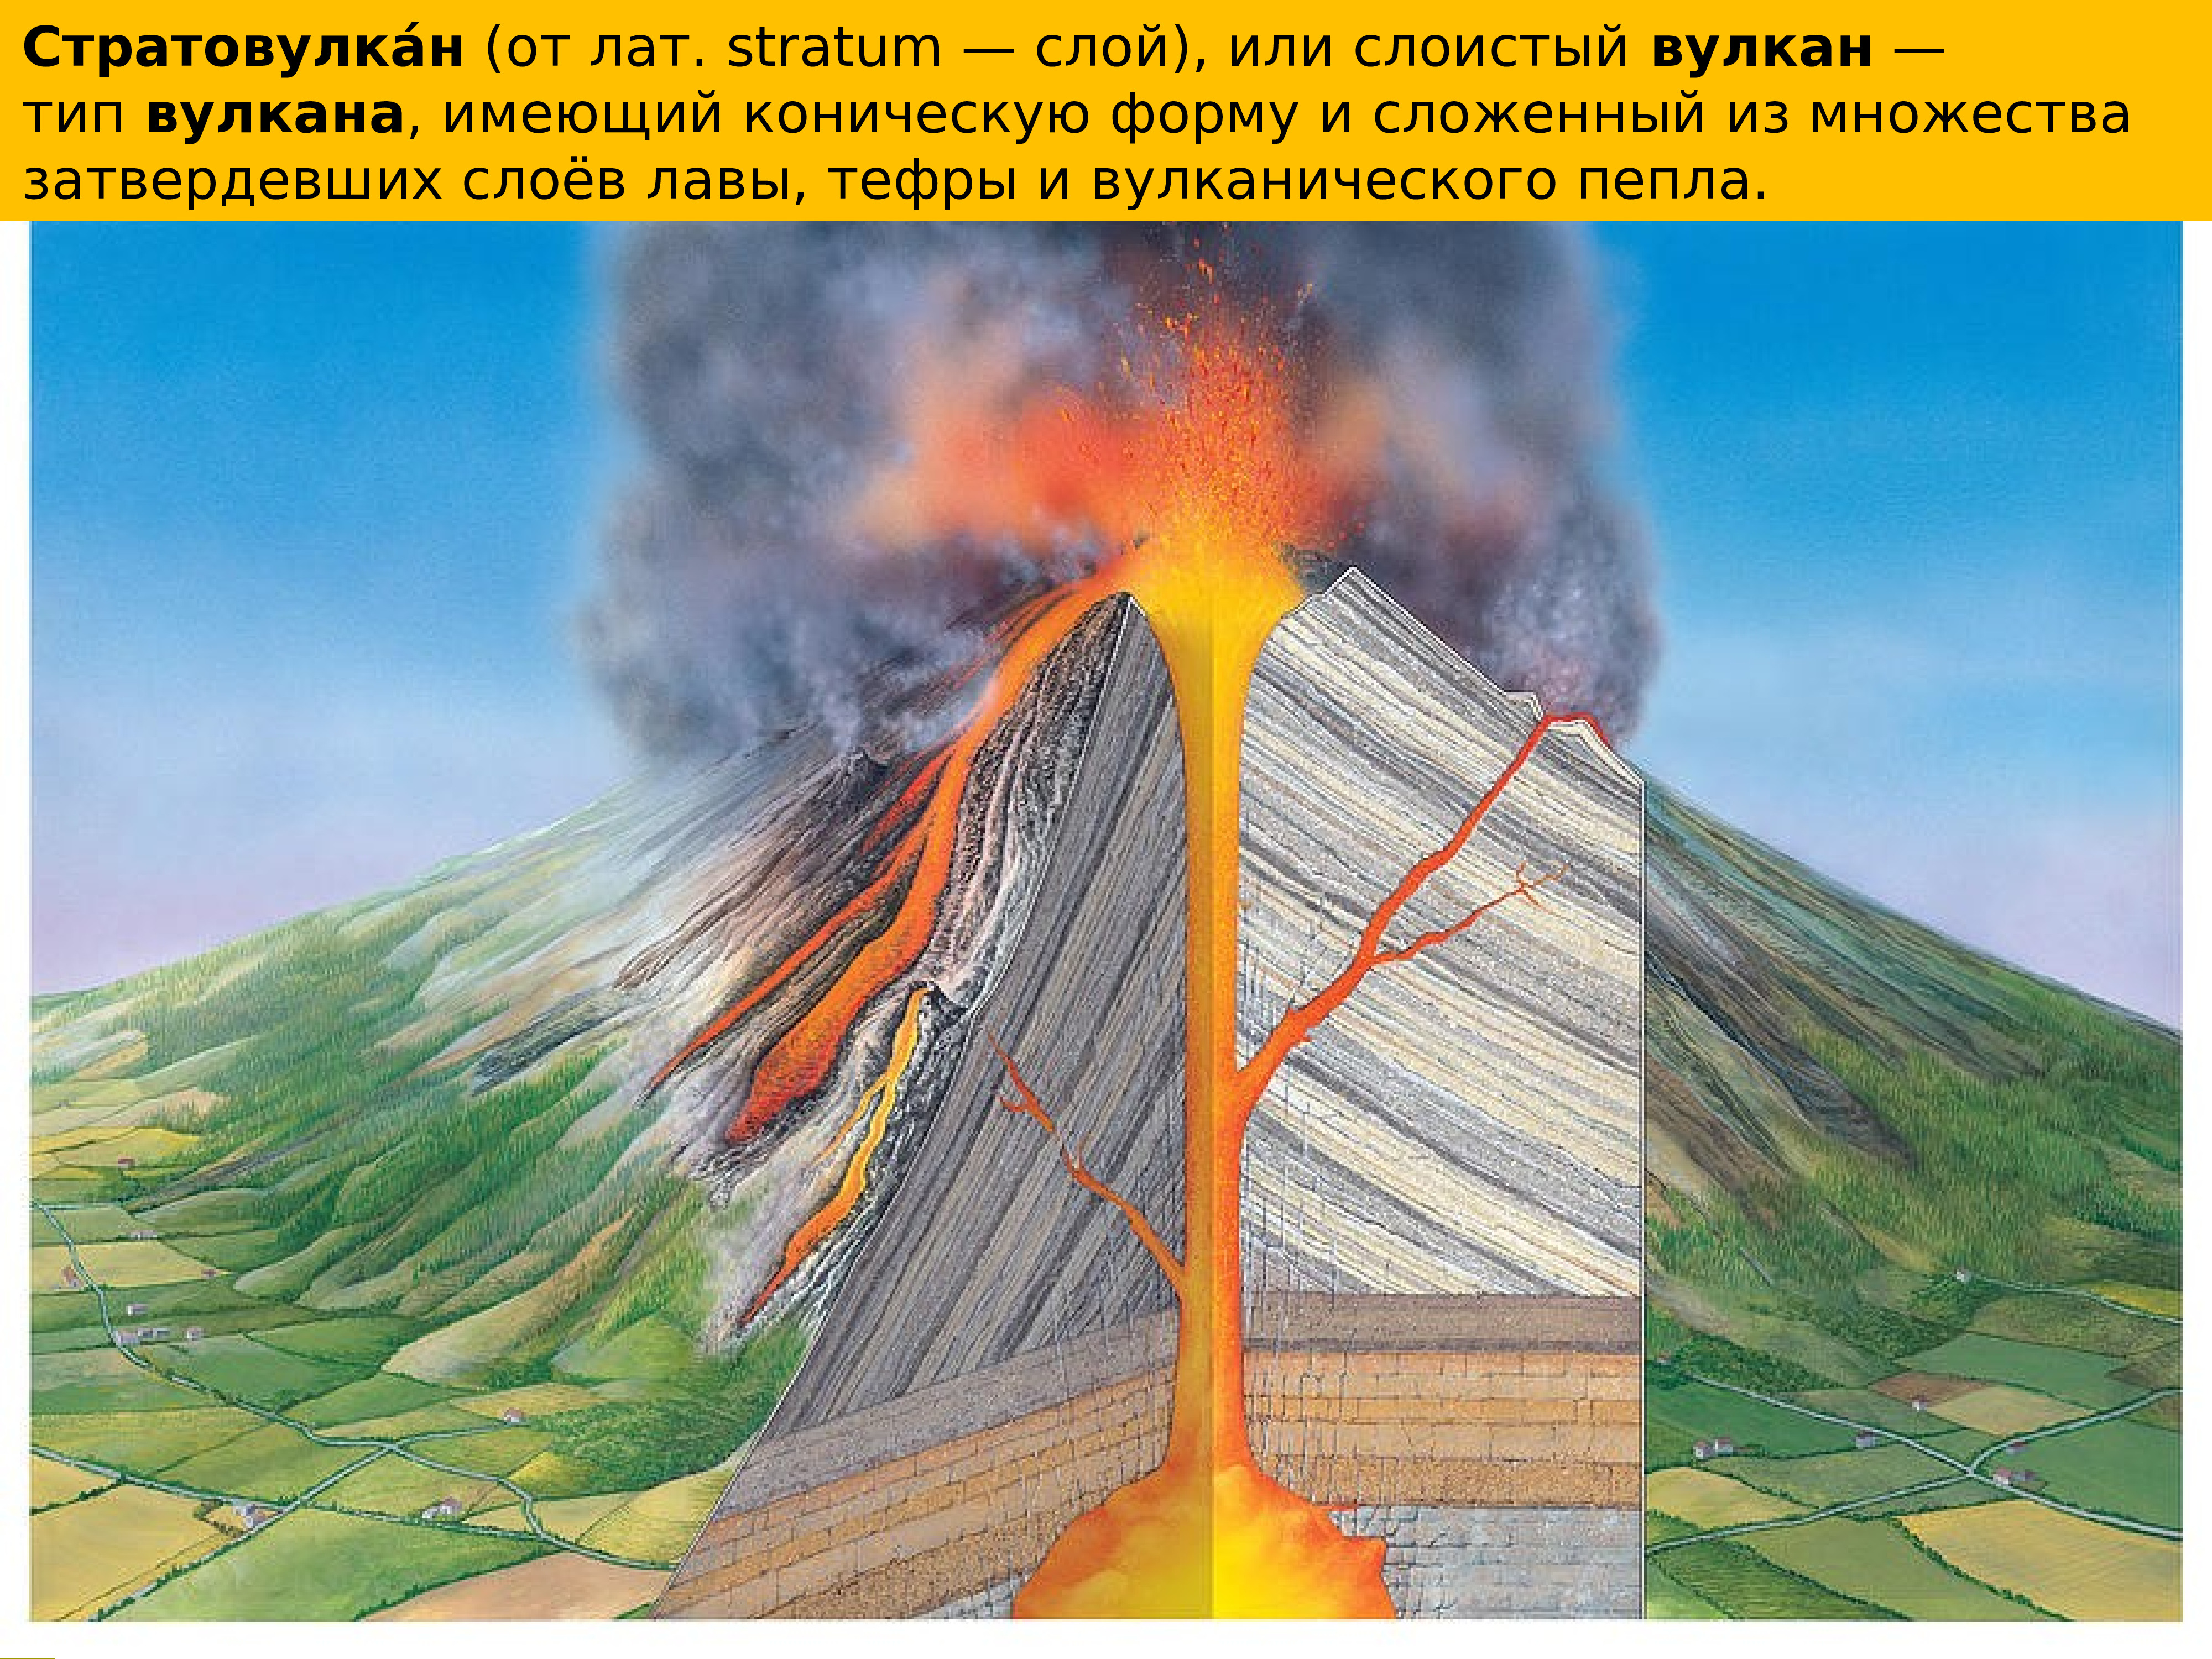 Строение вулкана Везувий